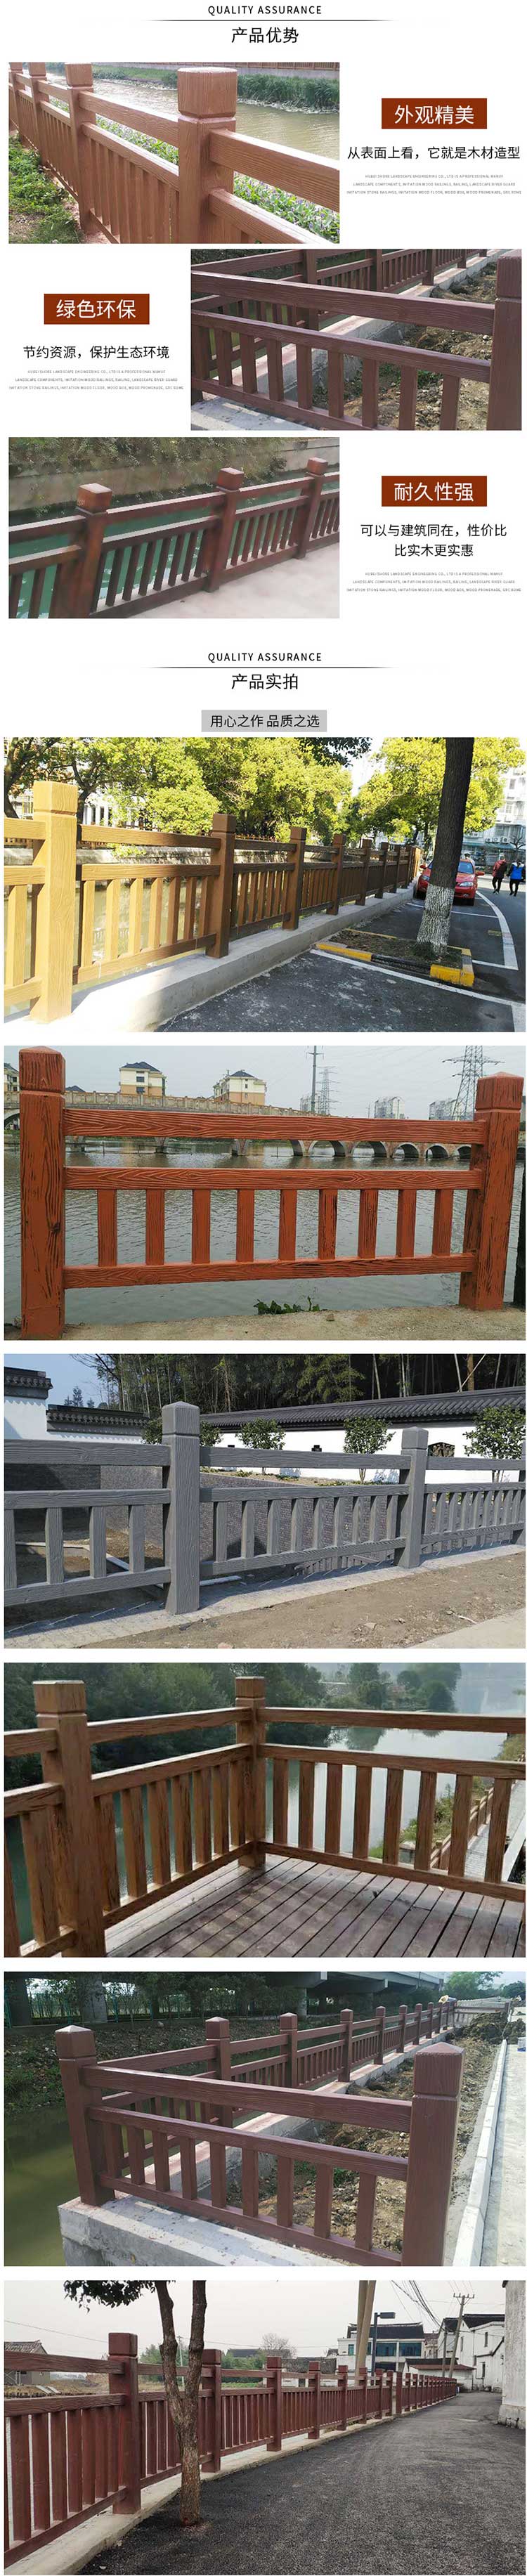 汕头水泥仿木护栏 栏川字型仿木护栏 公园景观水泥扶手栏杆防护栏